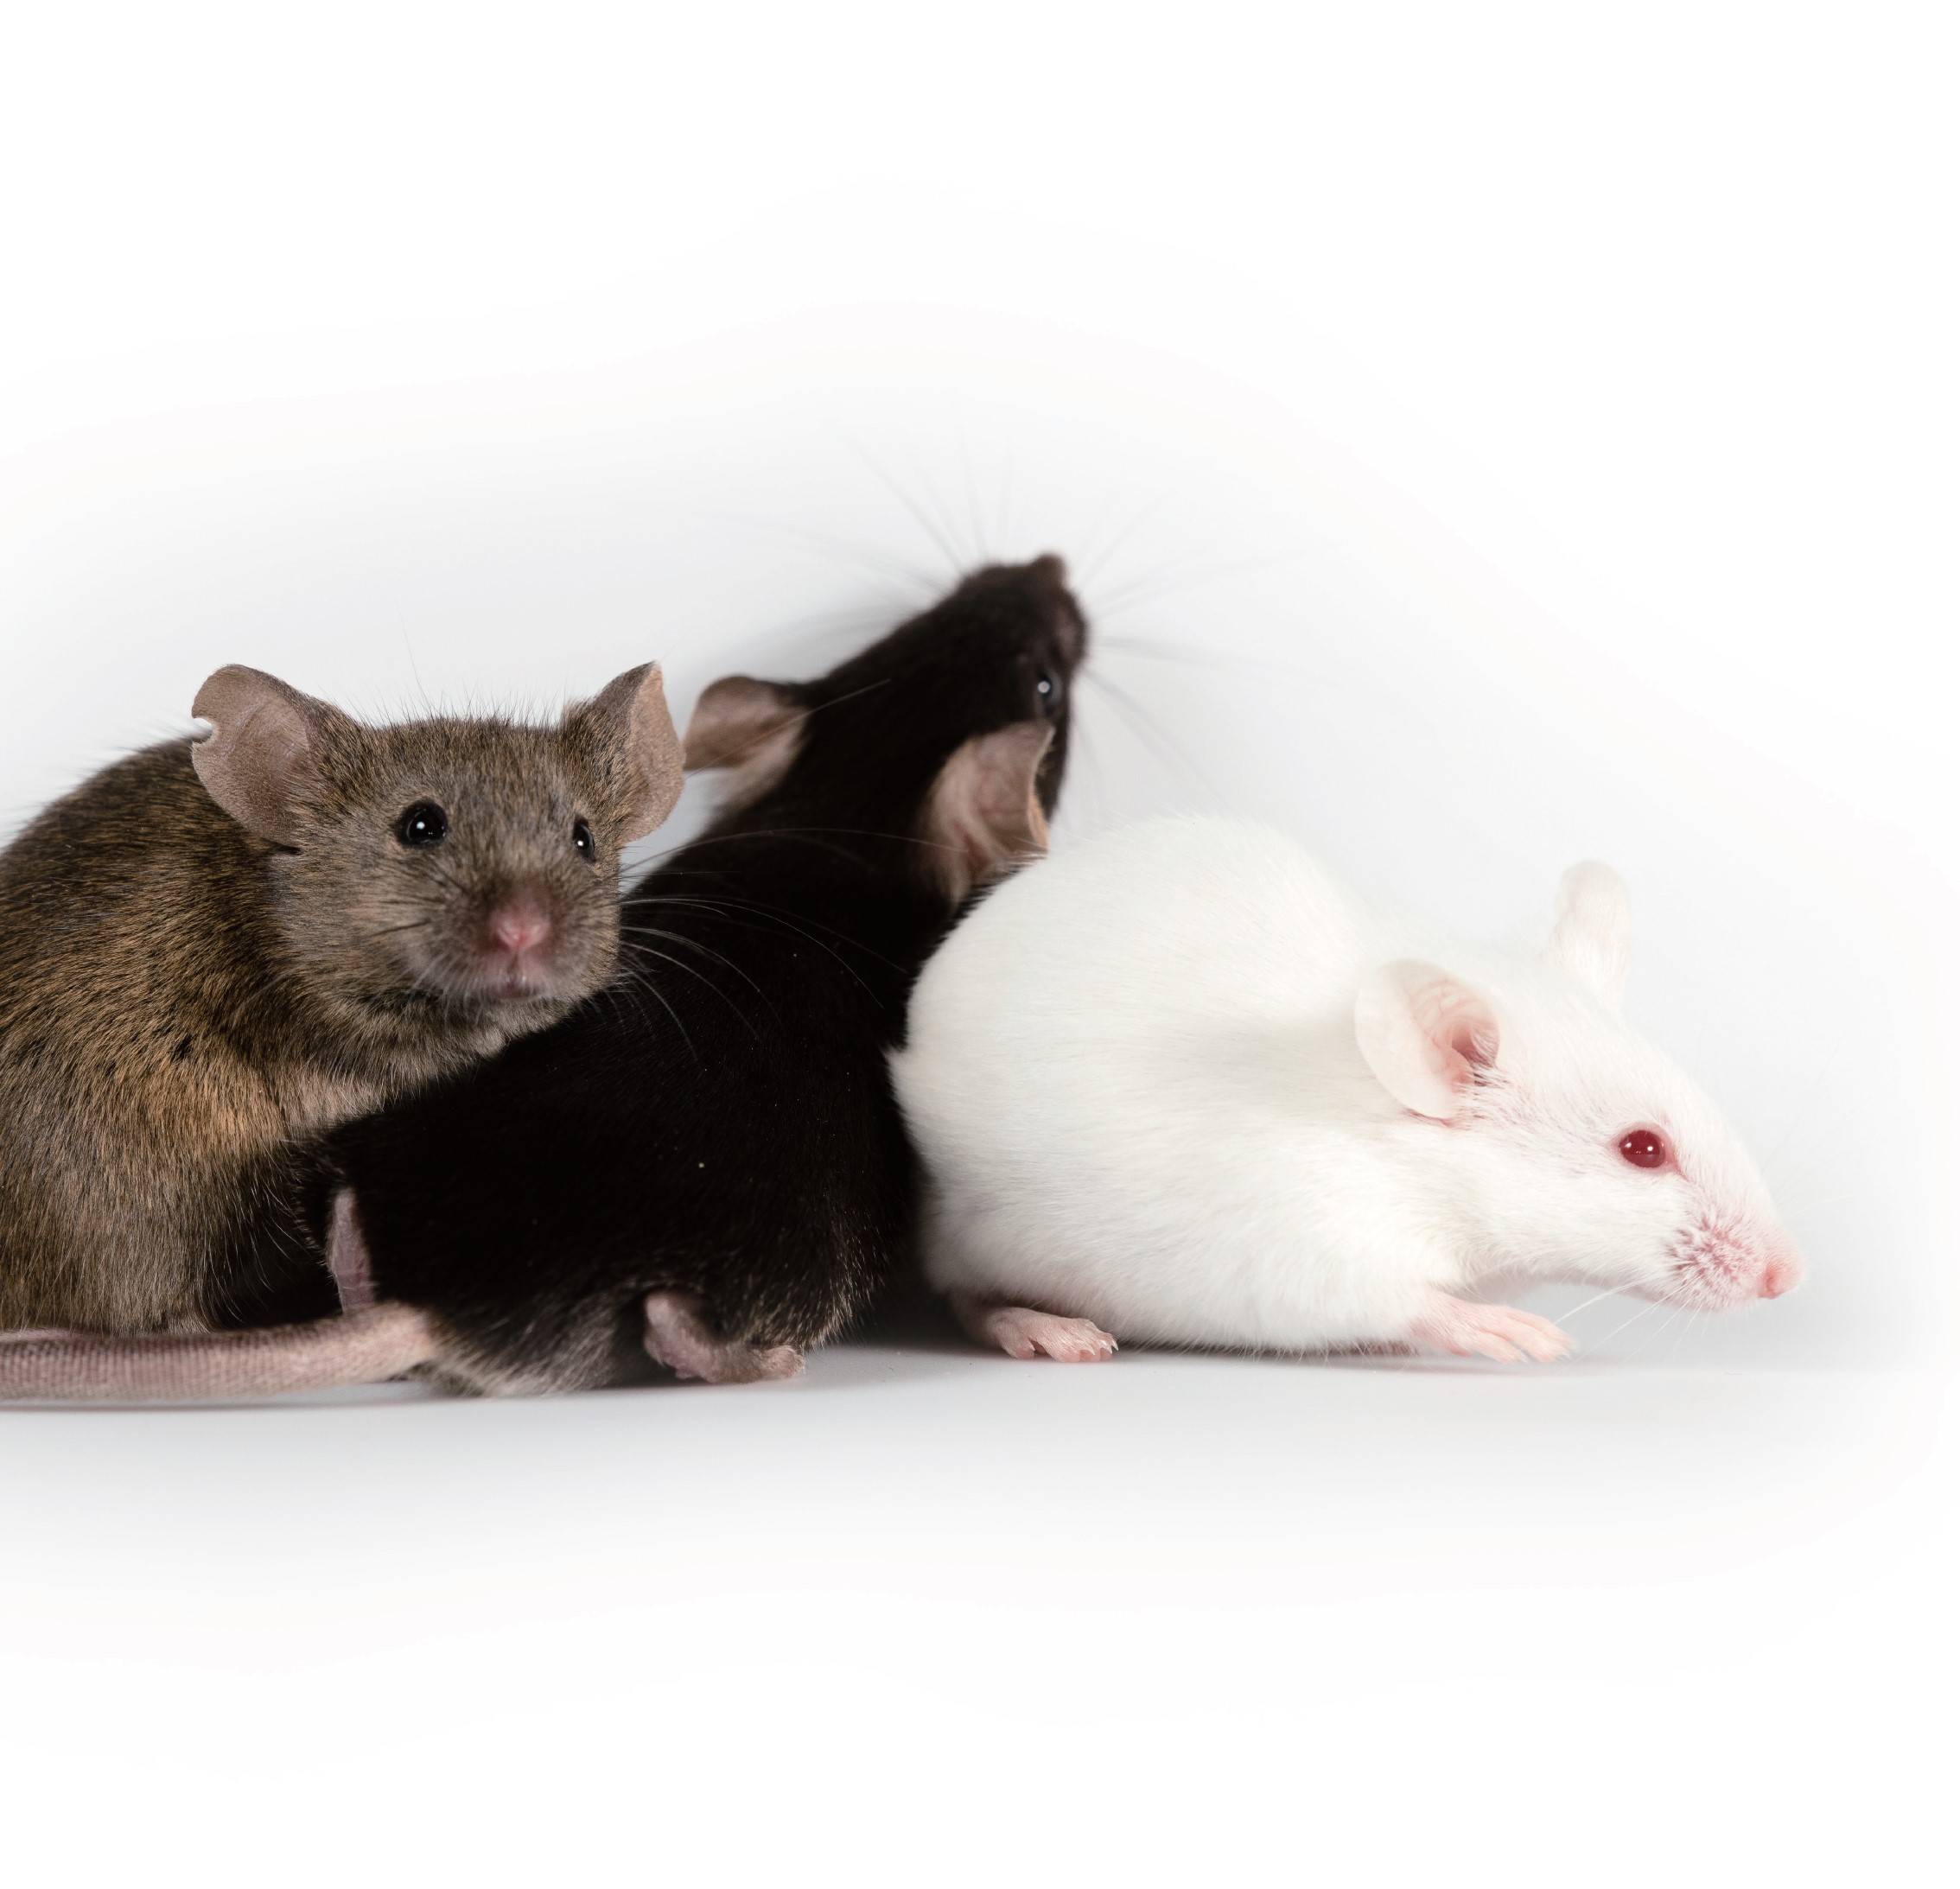 条件性基因敲除小鼠模型